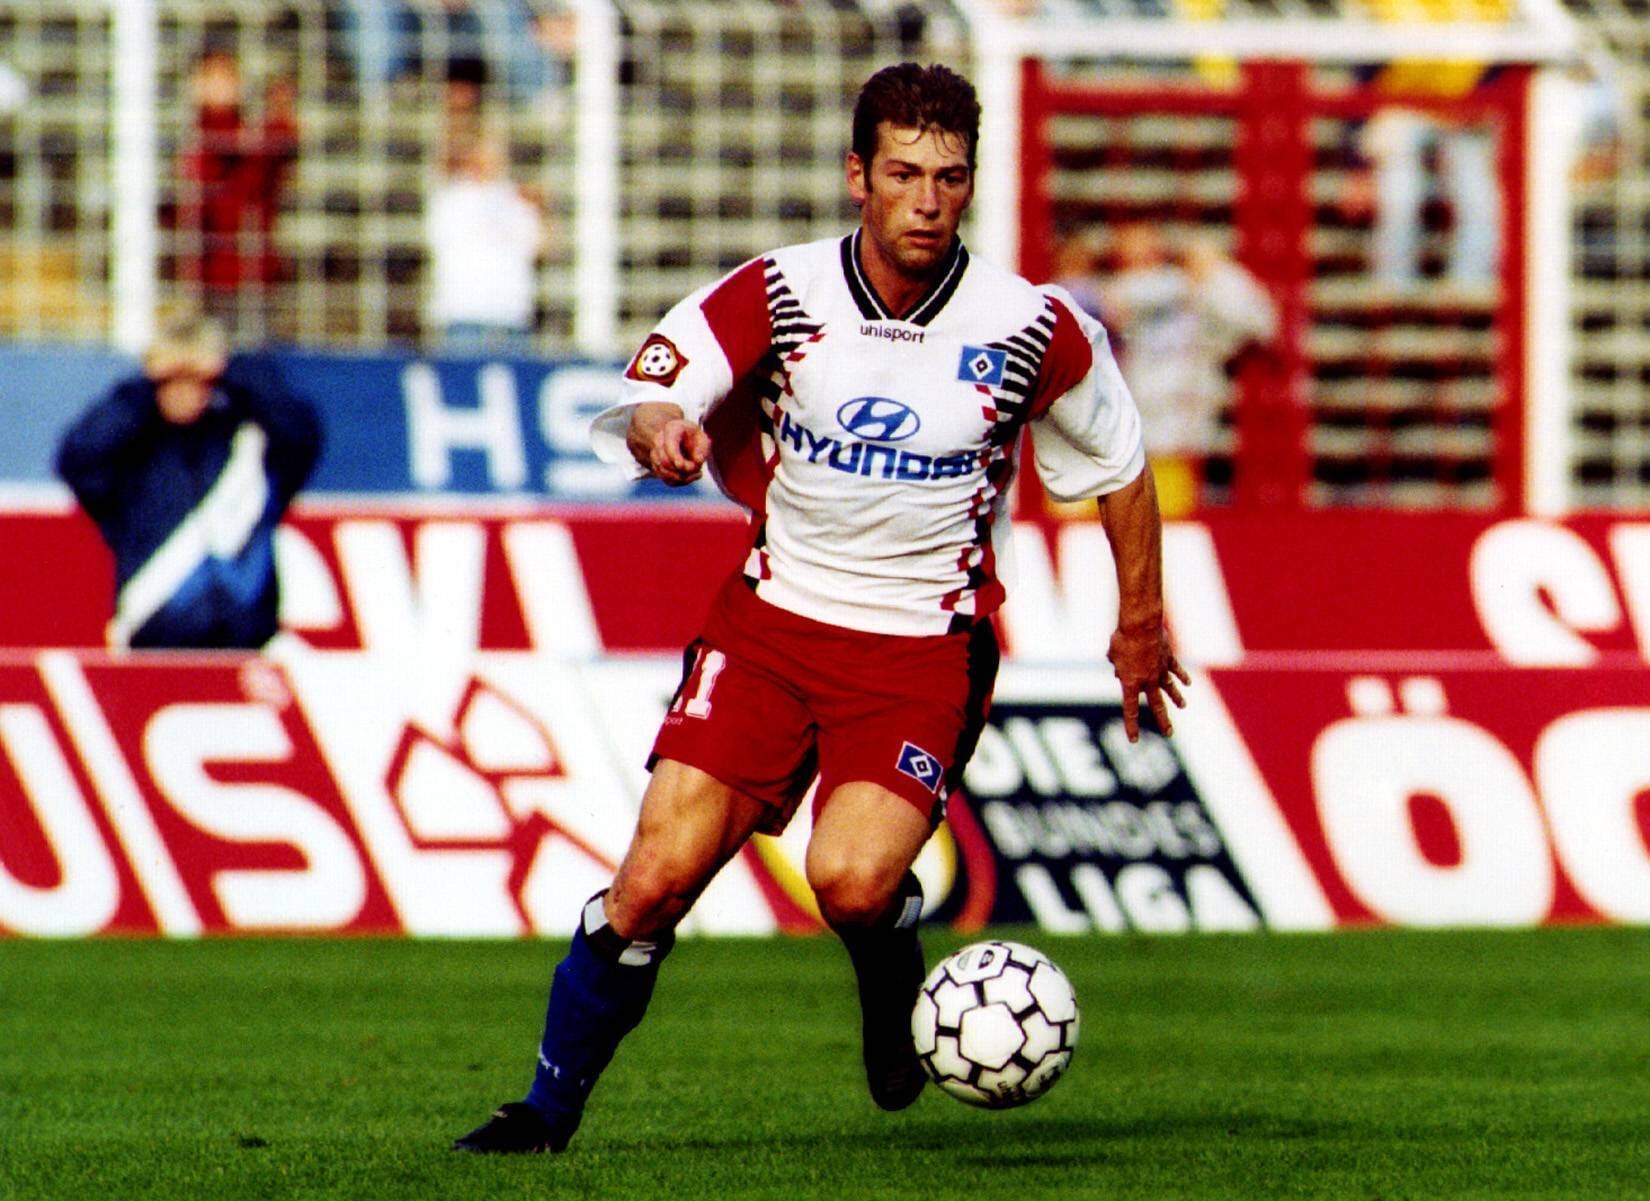 Harald Spörl (1987-2001): Der deutsche Profi-Fußballer war nach seiner Zeit als HSV-Spieler in der Saison 2001/02 beim Zweitligisten LR Ahlen tätig. Nach einigen Trainer-Jobs landete "Lumpi" 2002 wieder beim Hamburger SV – wo er seitdem ein Scout ist.